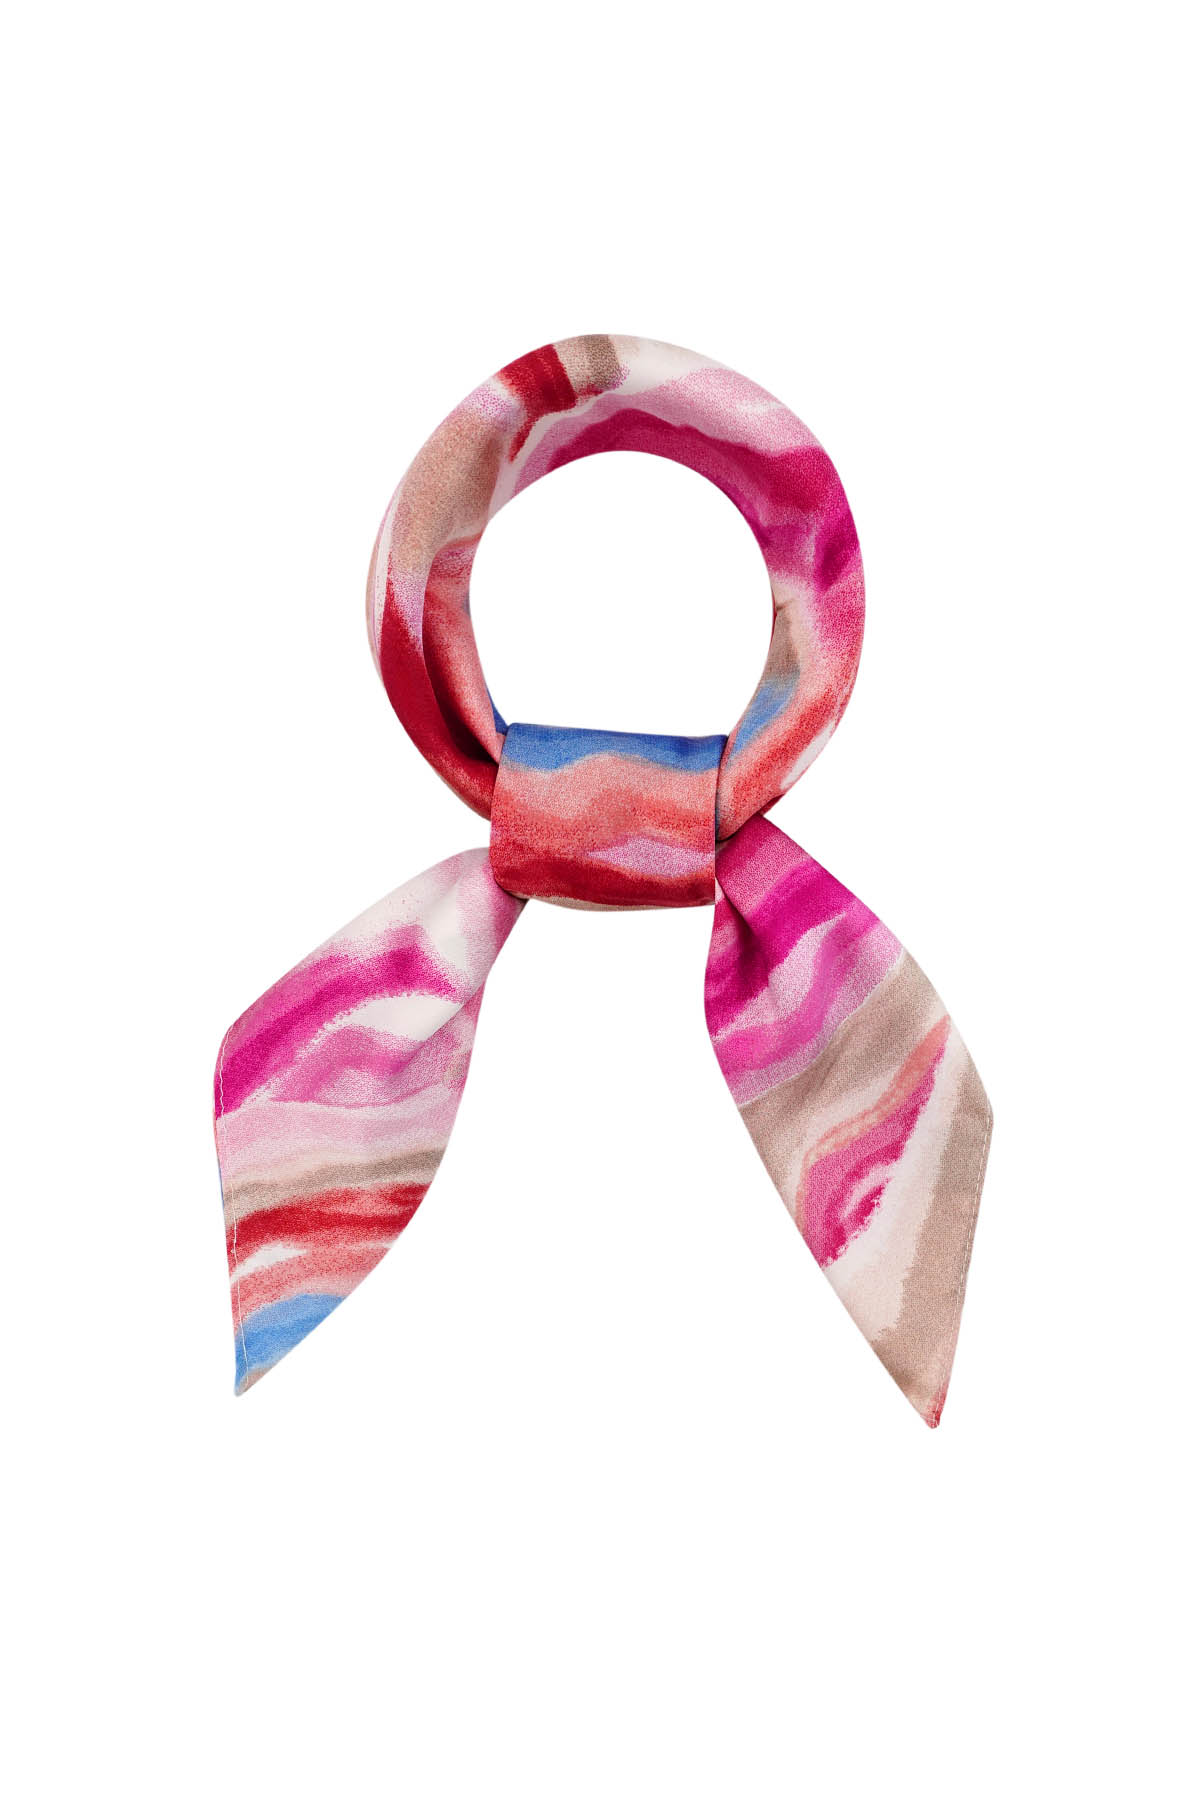 Sjaal strepige herfstprint - roze h5 